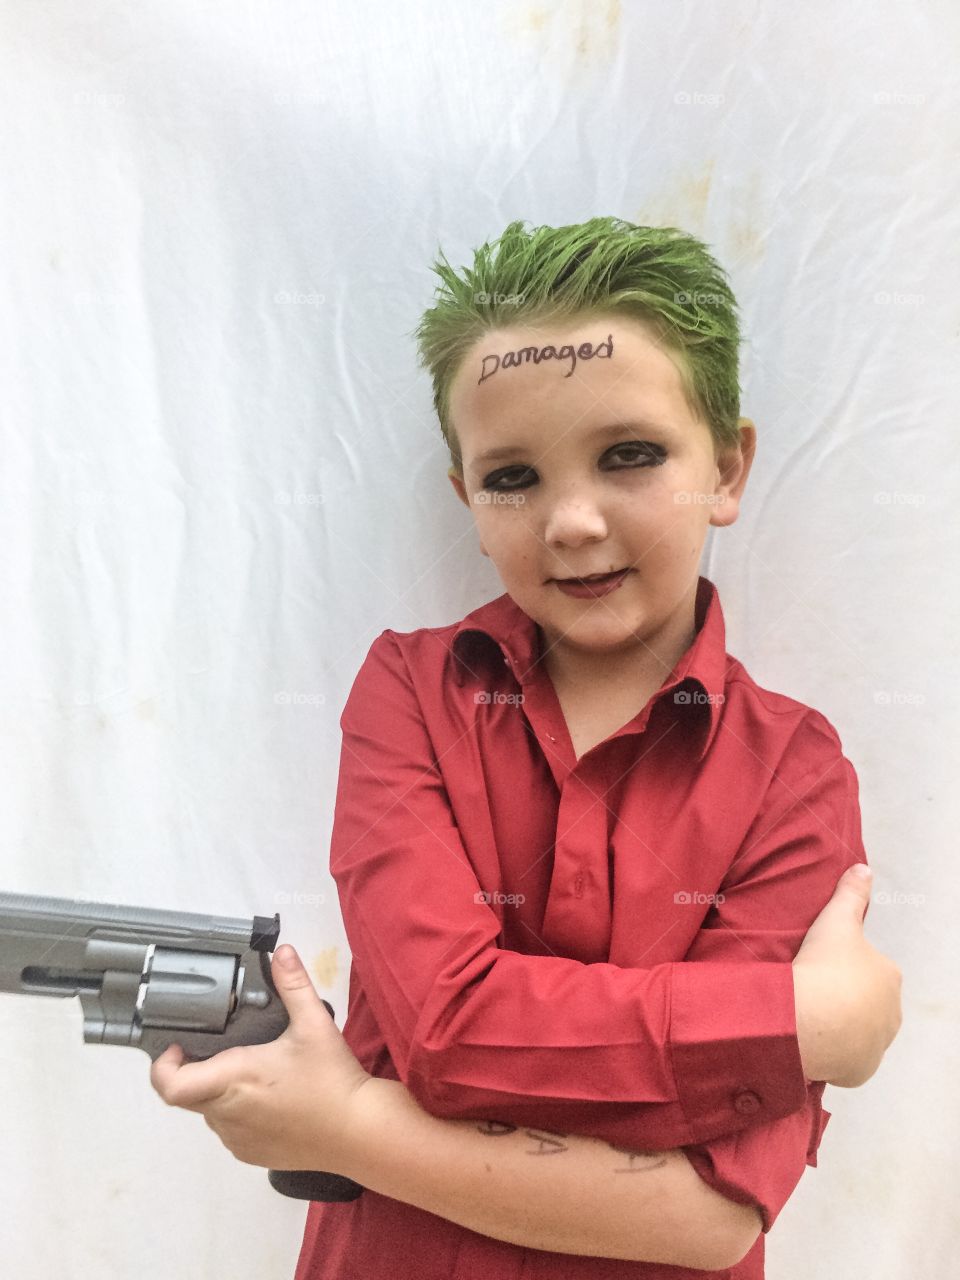 A joker boy with gun against white background